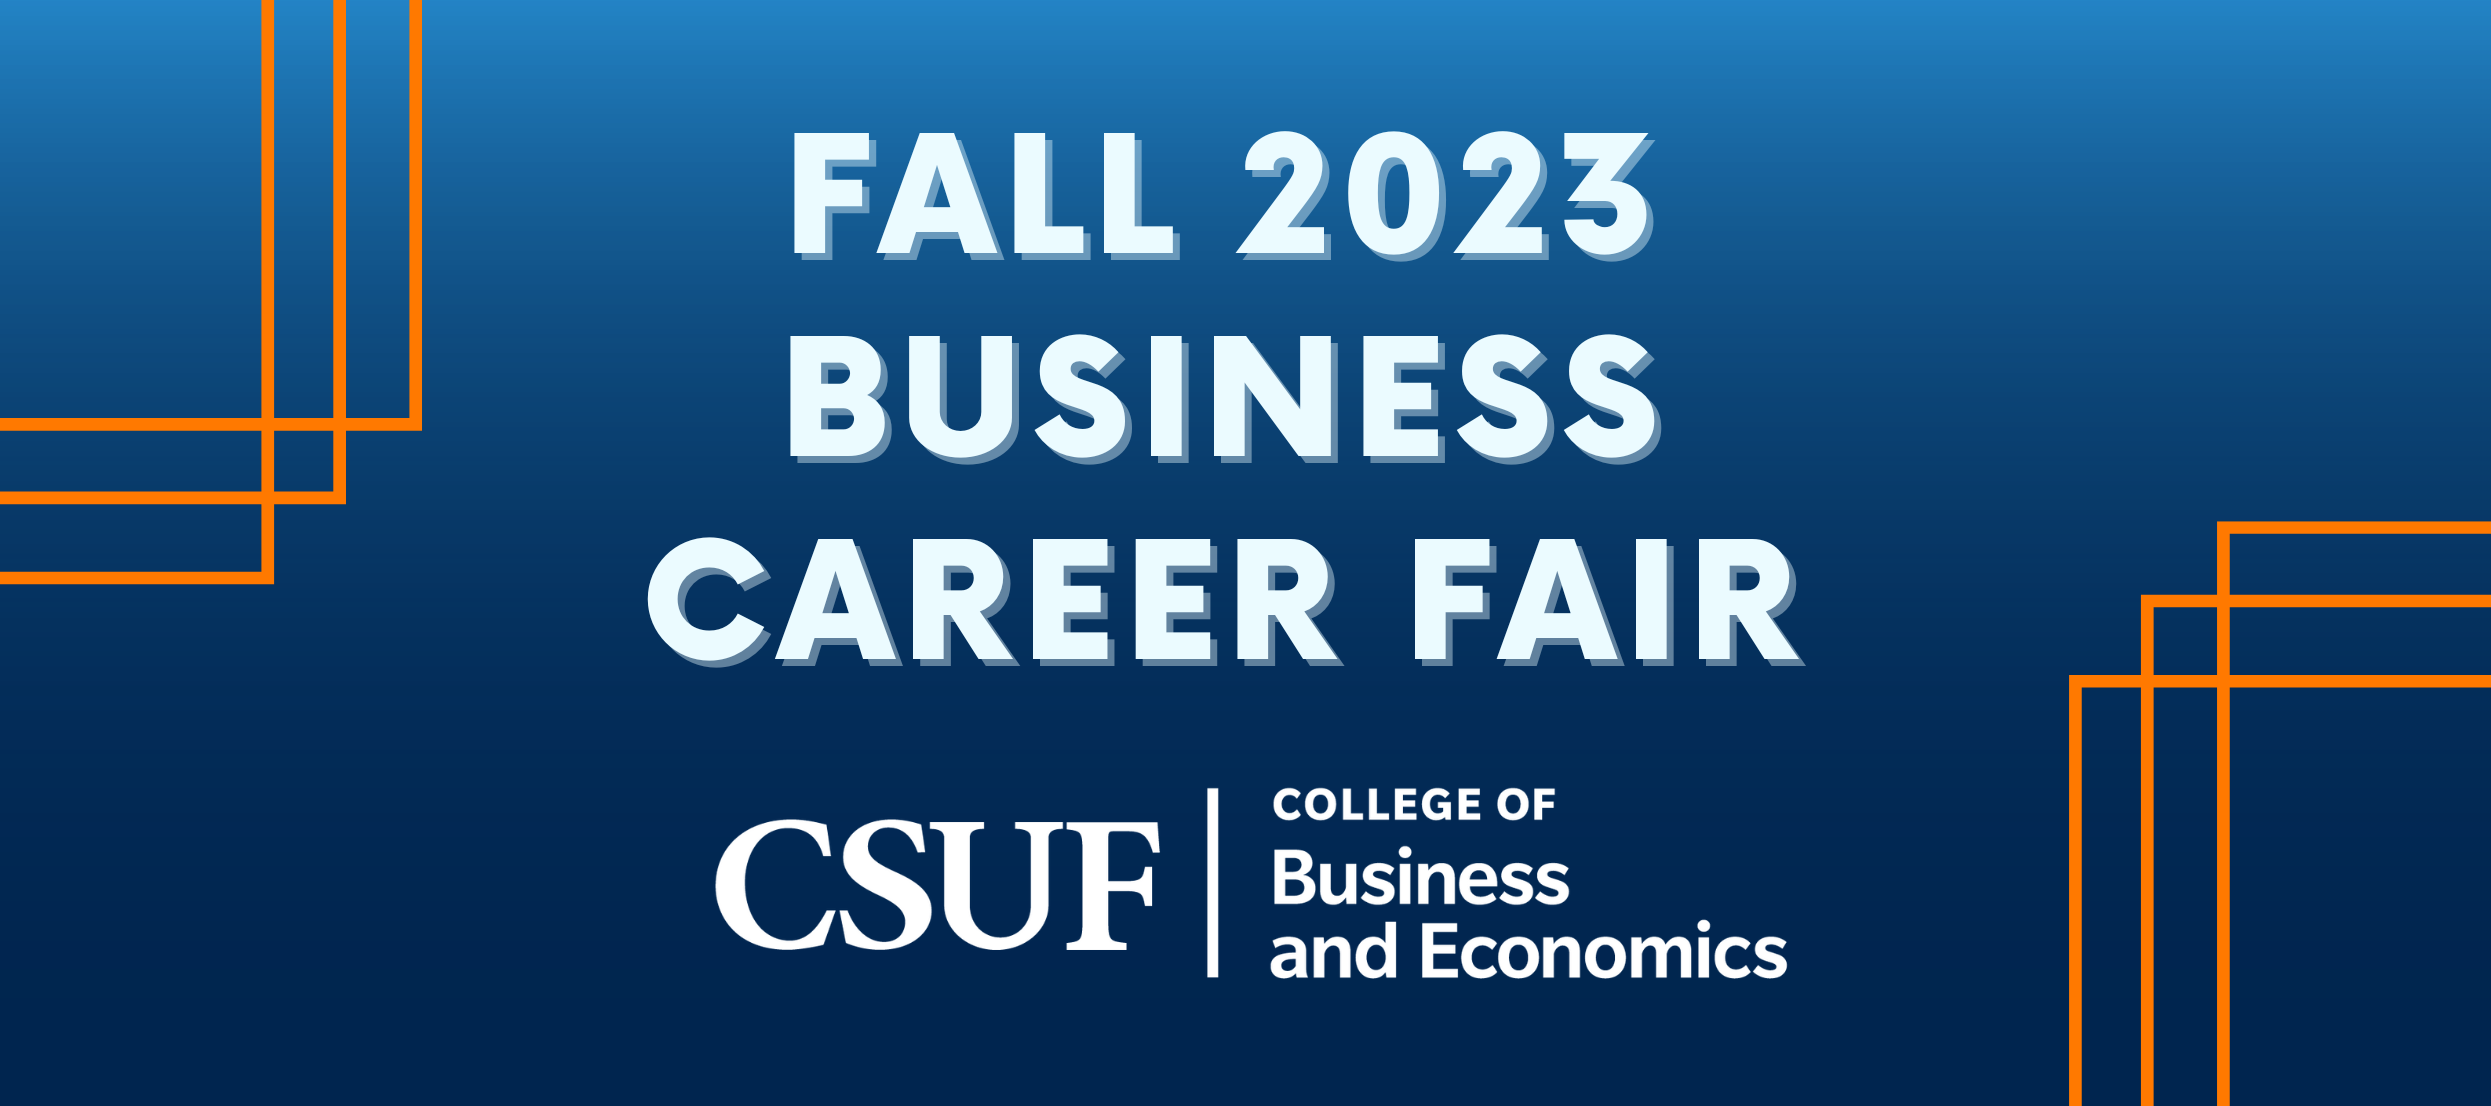 Career Fairs & Career Center CSUF